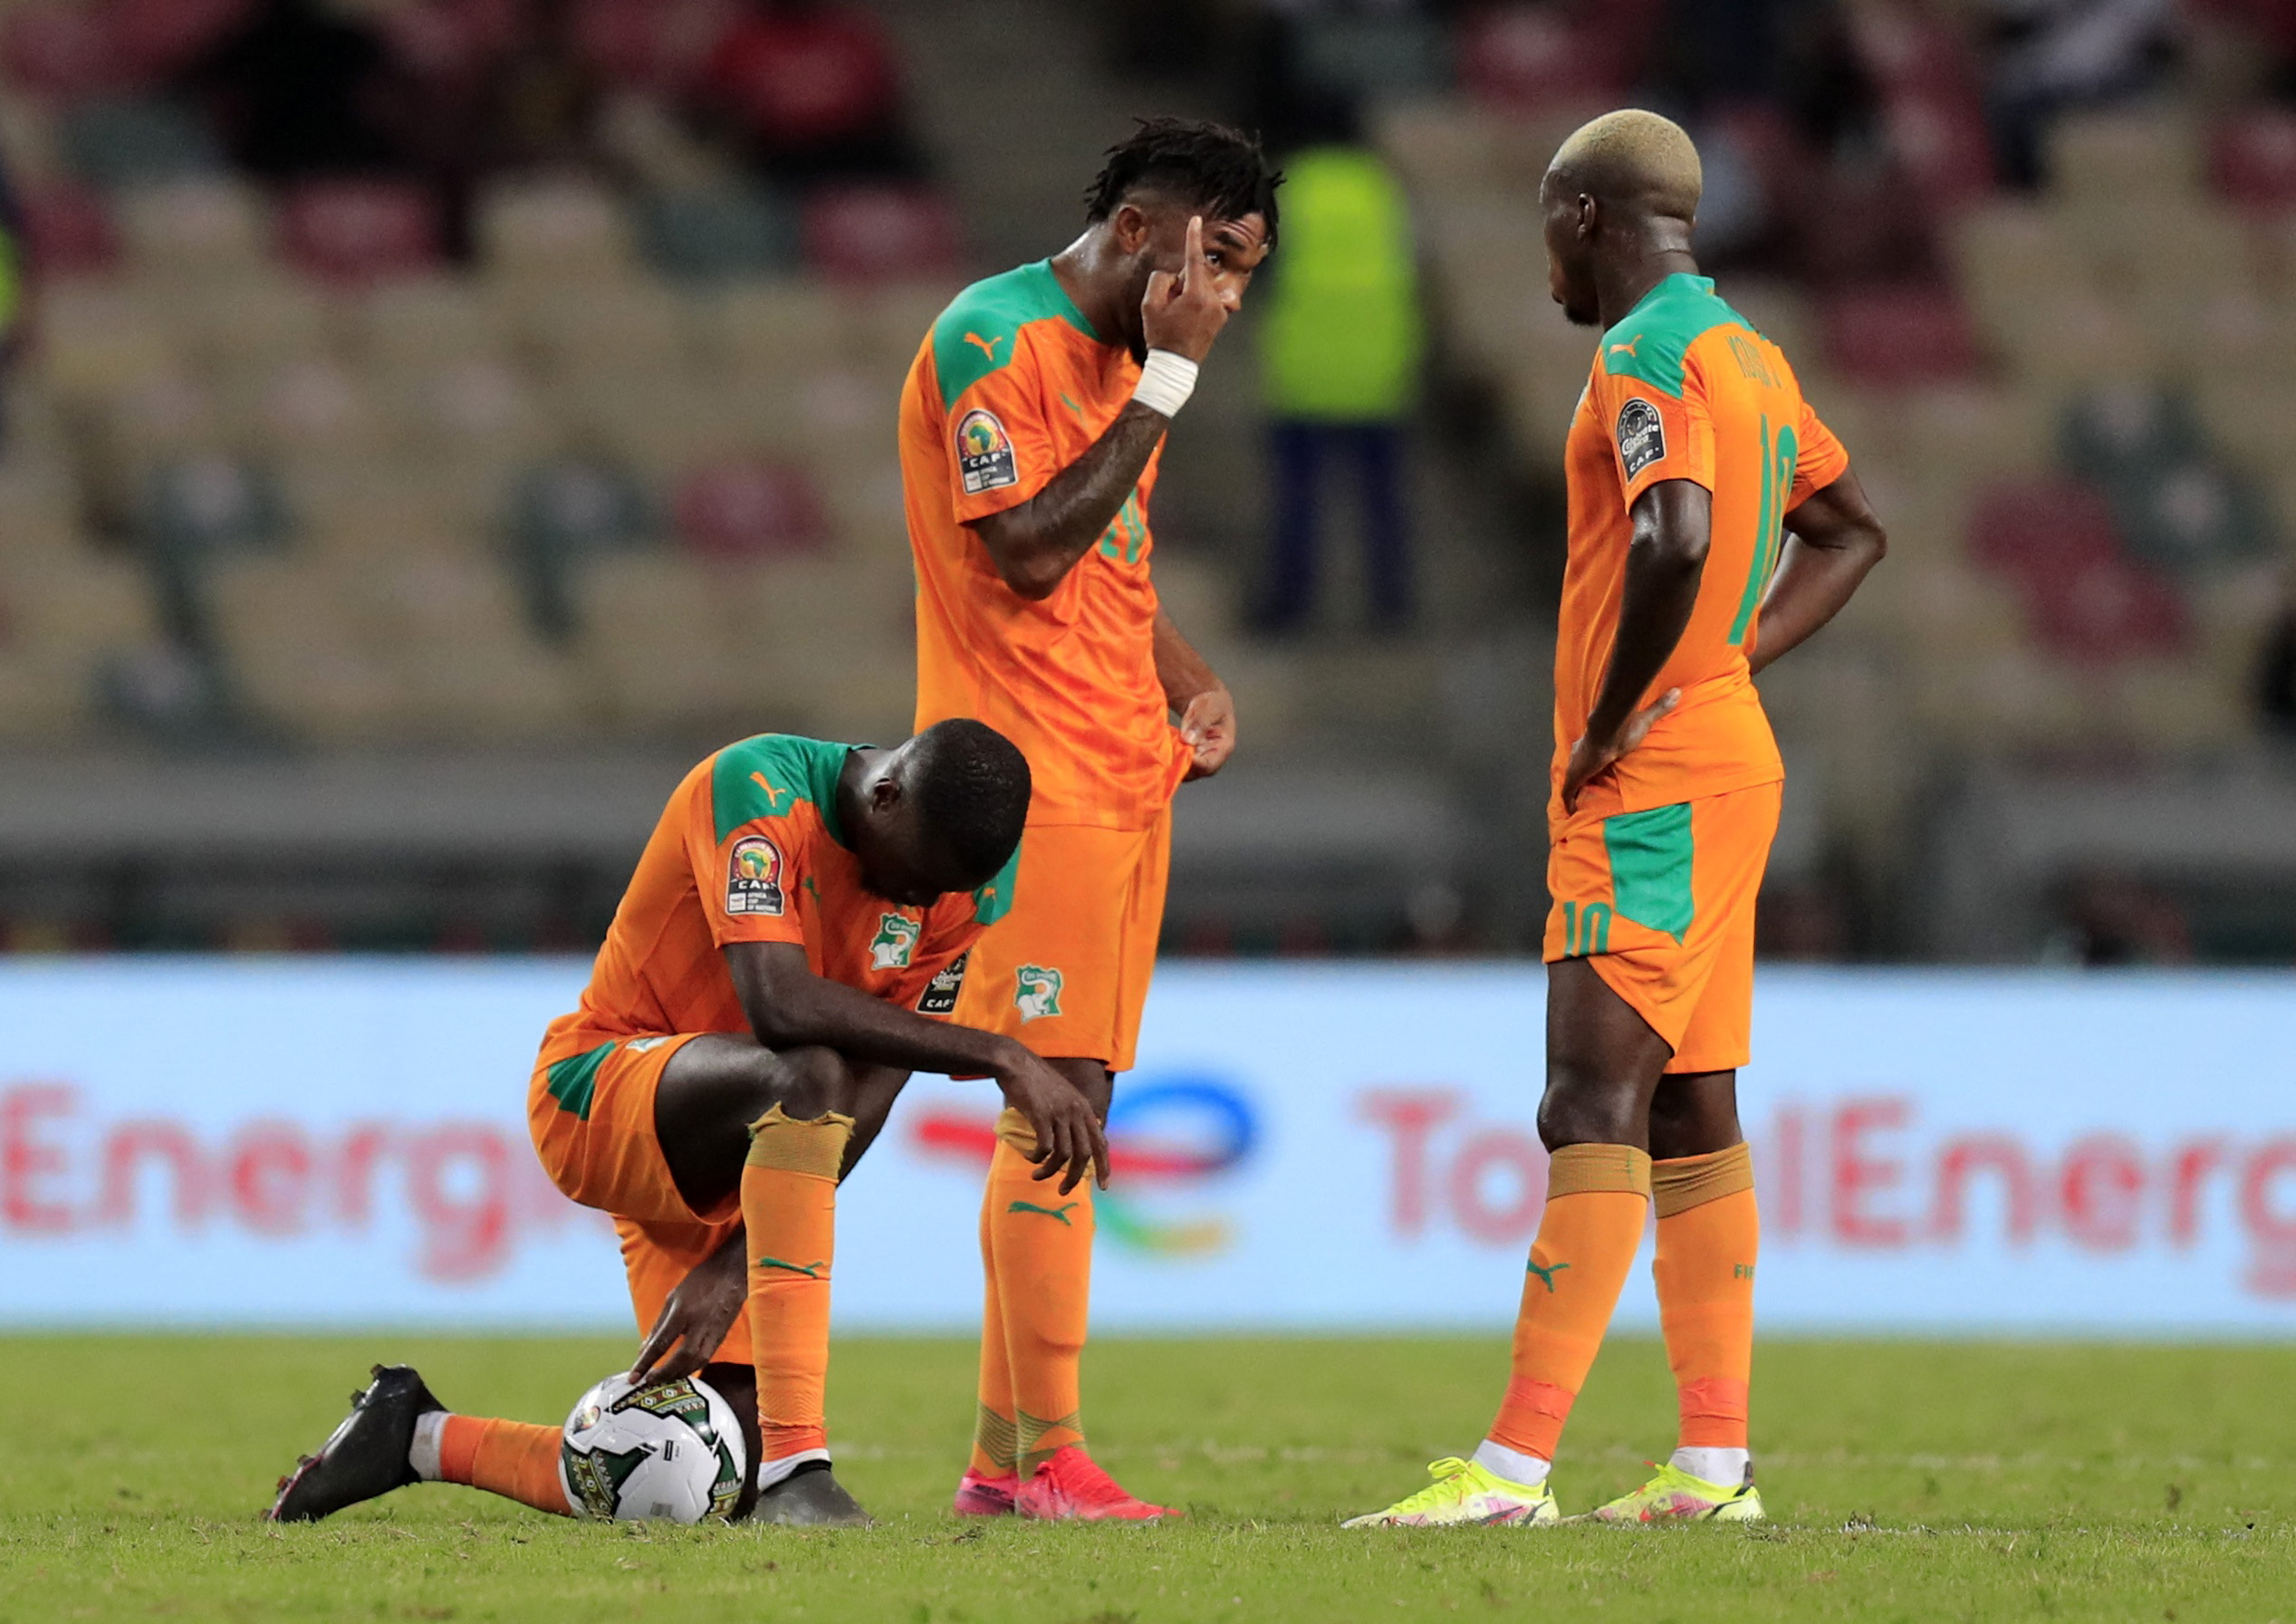 La decepción de los jugadores de Costa de Marfil tras el empate de Sierra Leona (REUTERS/Thaier Al-Sudani)